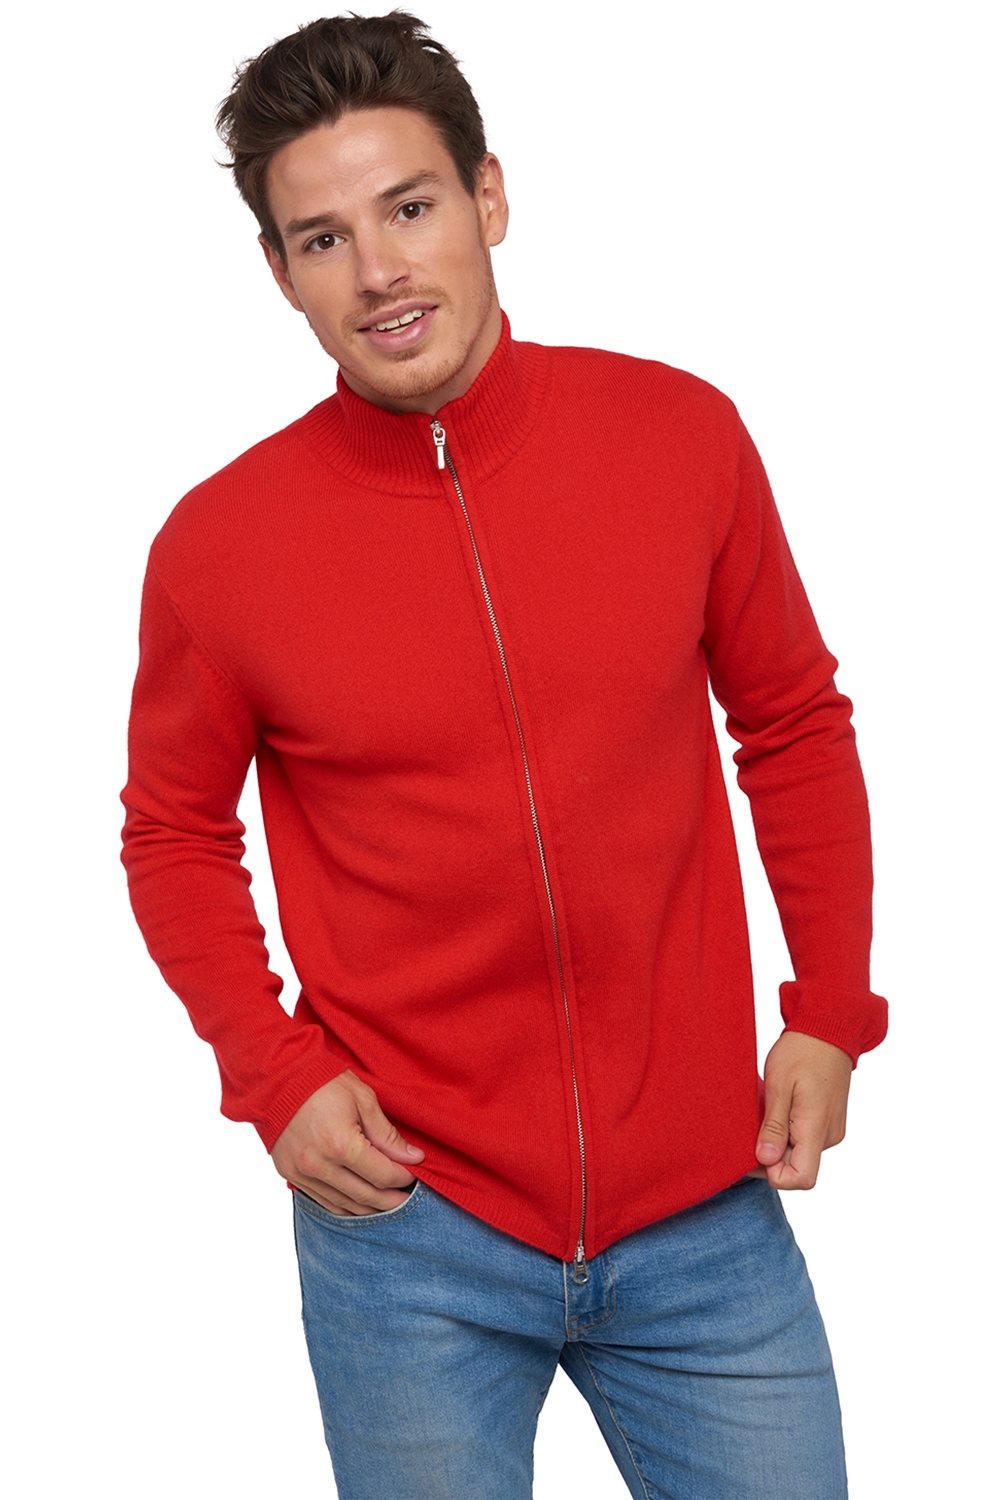 Cachemire pull homme zip capuche elton rouge xl